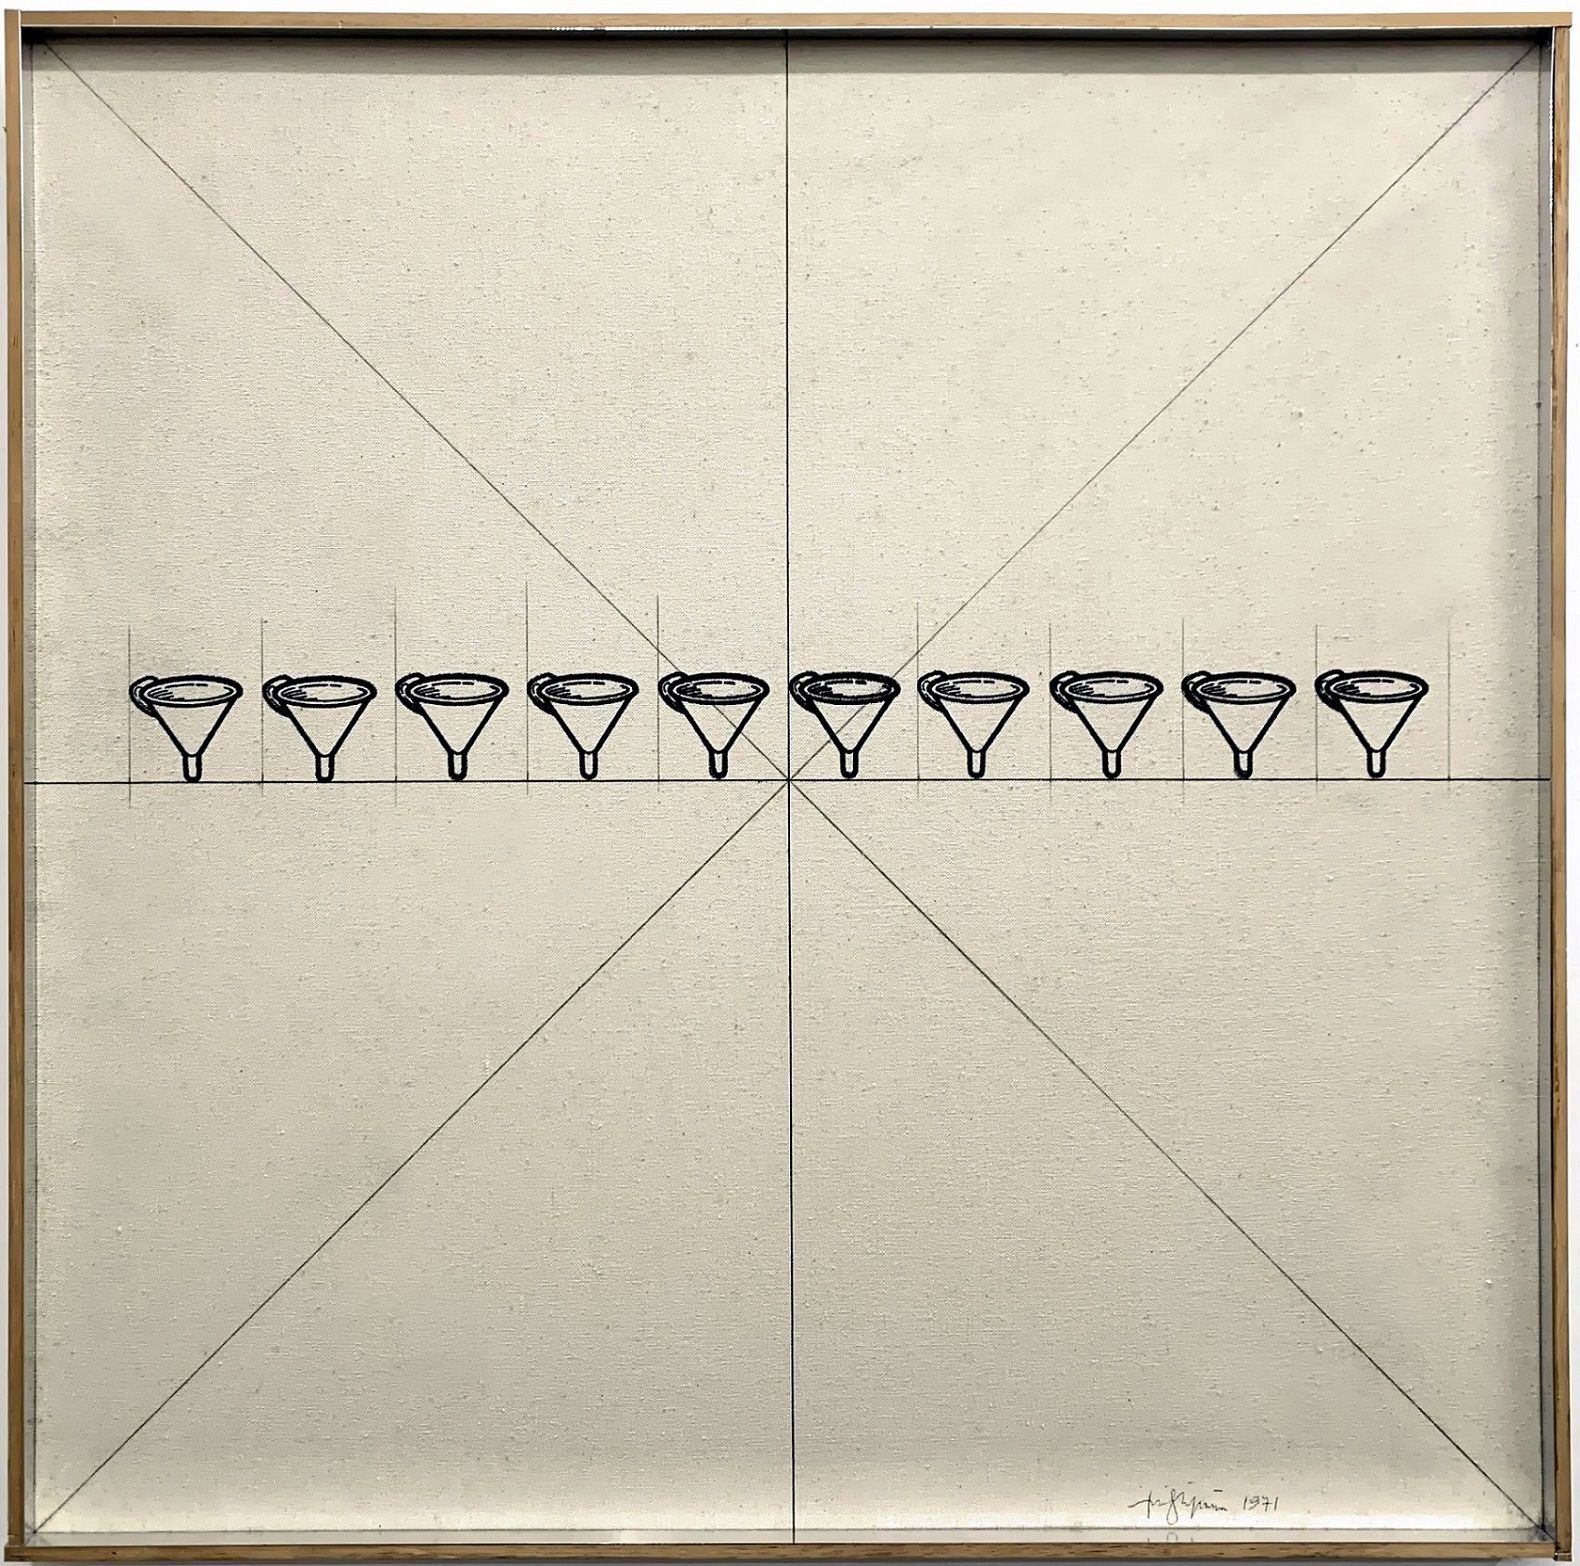 TINO STEFANONI Gli imbuti, 1971, tecnica mista su tela, 70x70 cm

firma dell'art&hellip;